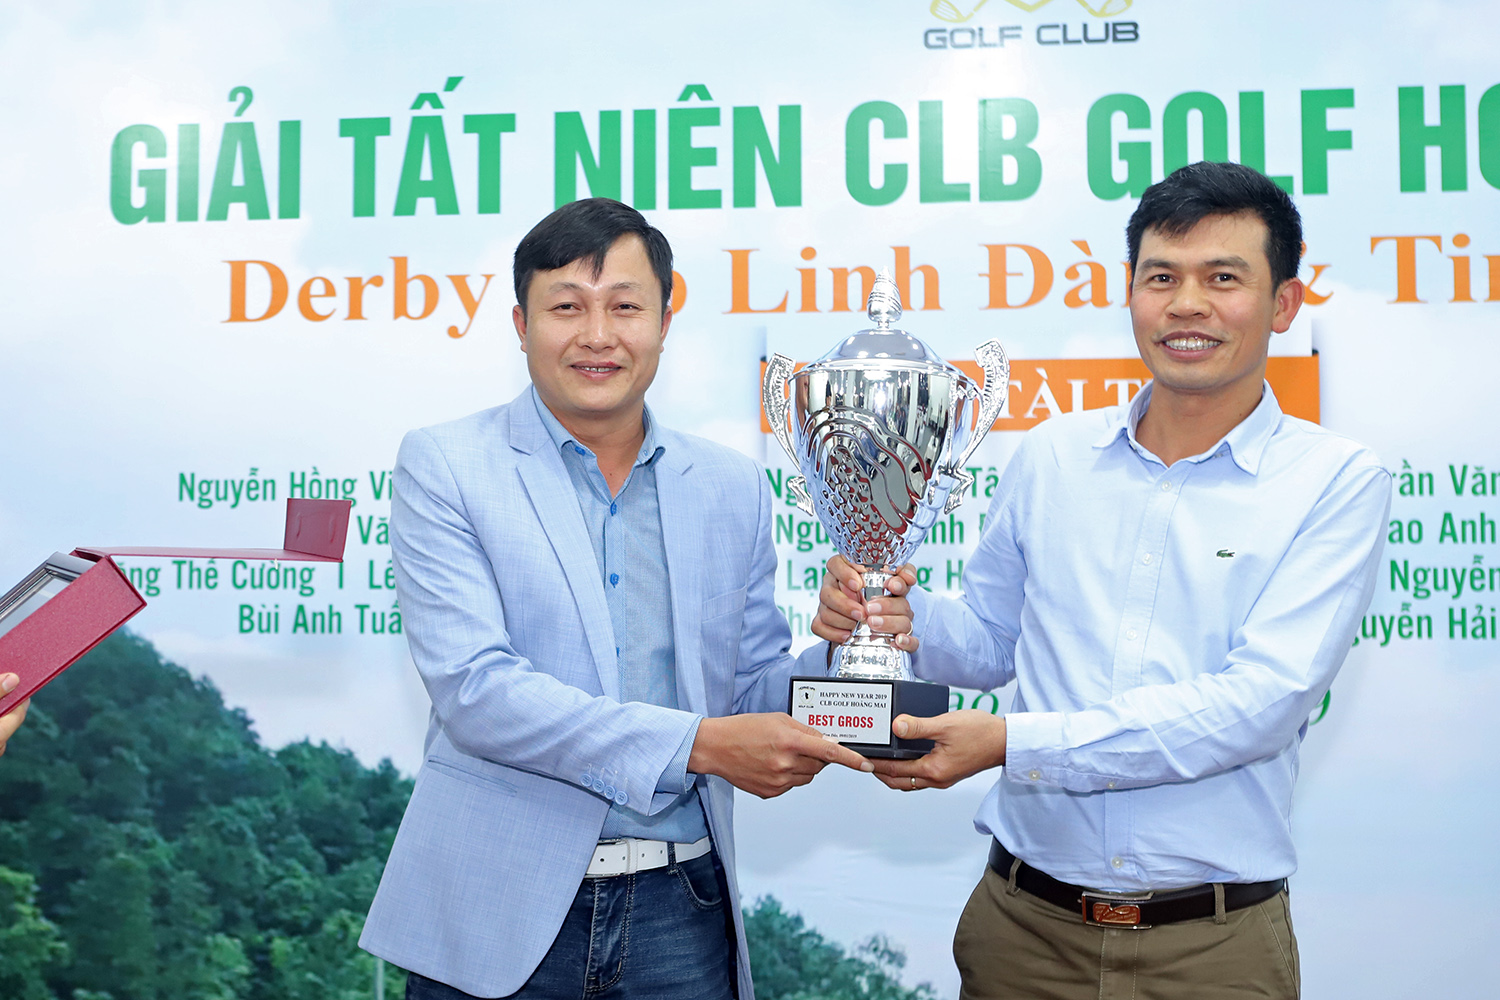 Golfer Nguyễn Văn Chiến đoạt cúp vô địch giải golf CLB Hoàng Mai Tất niên 2018